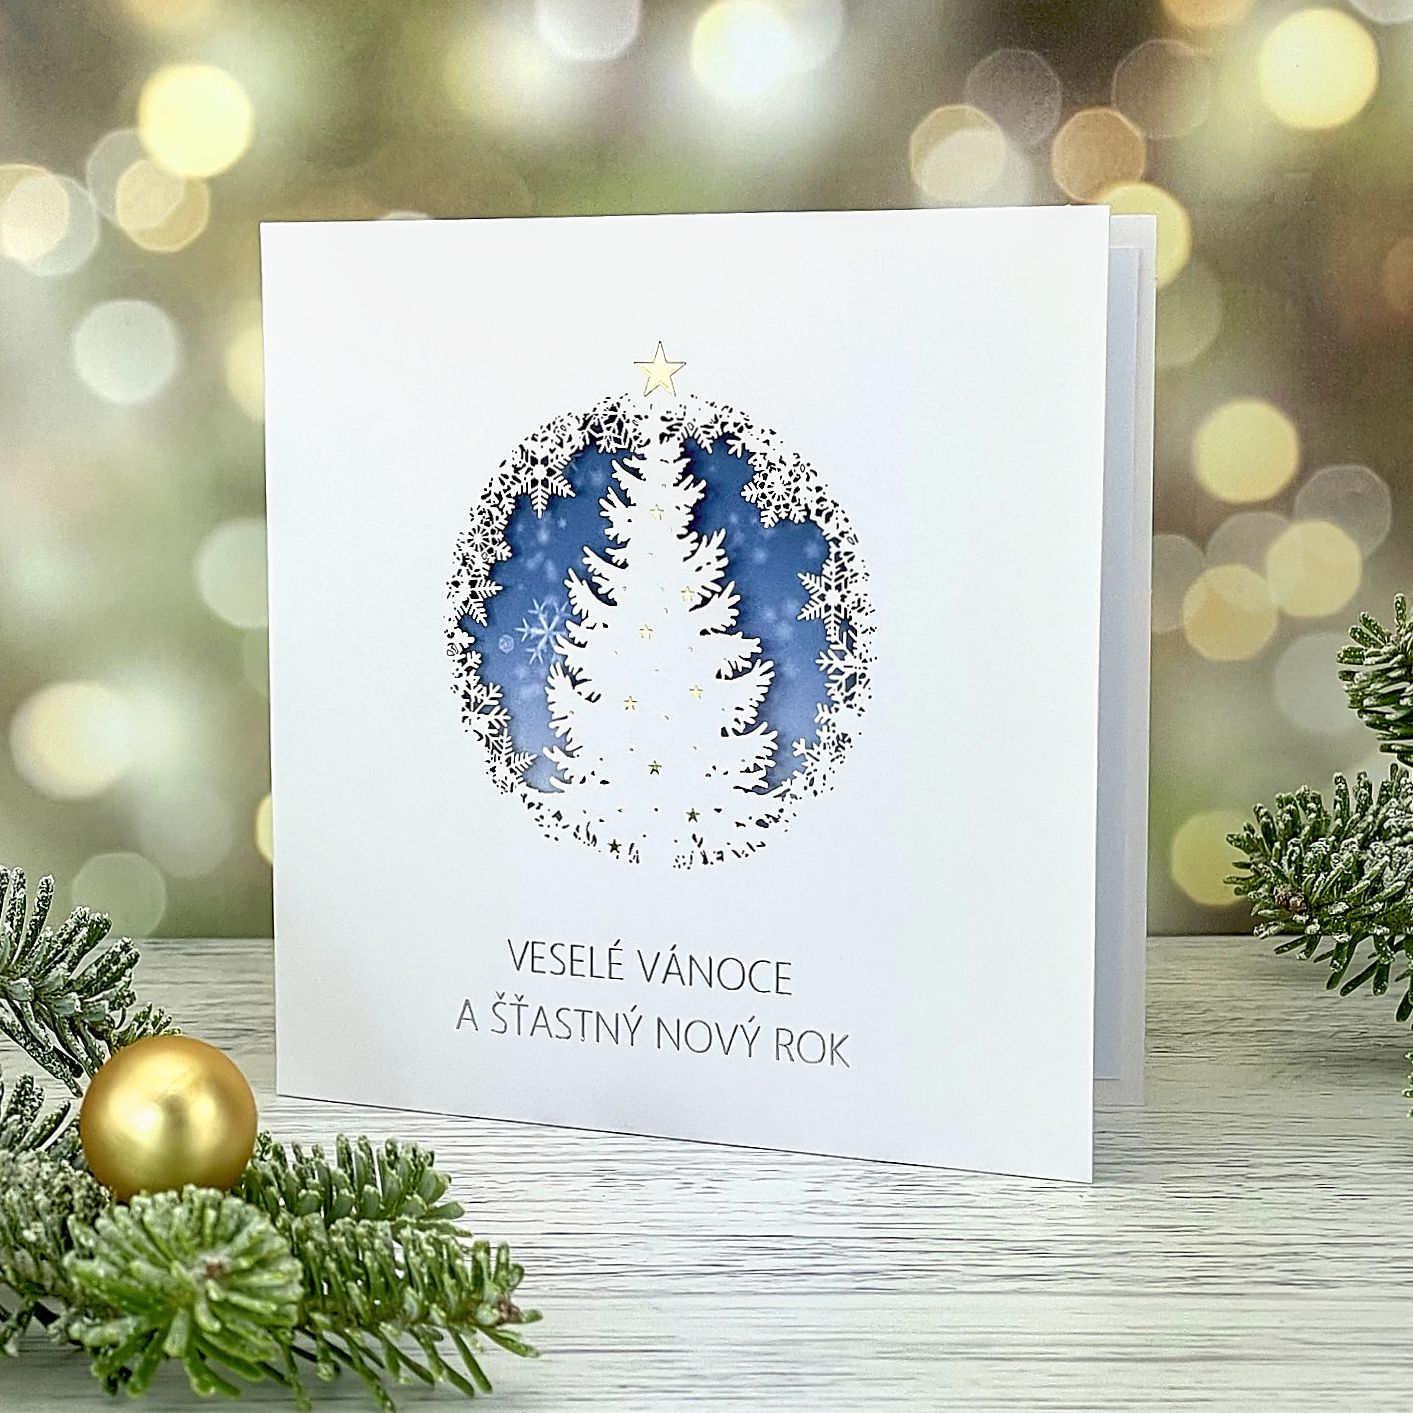 Novoroční–vánoční přání s jemným laserovaným motivem – vánoční strom a vločky, jasně bílý hlazený papír, otevírací, formát 135 × 135 mm.